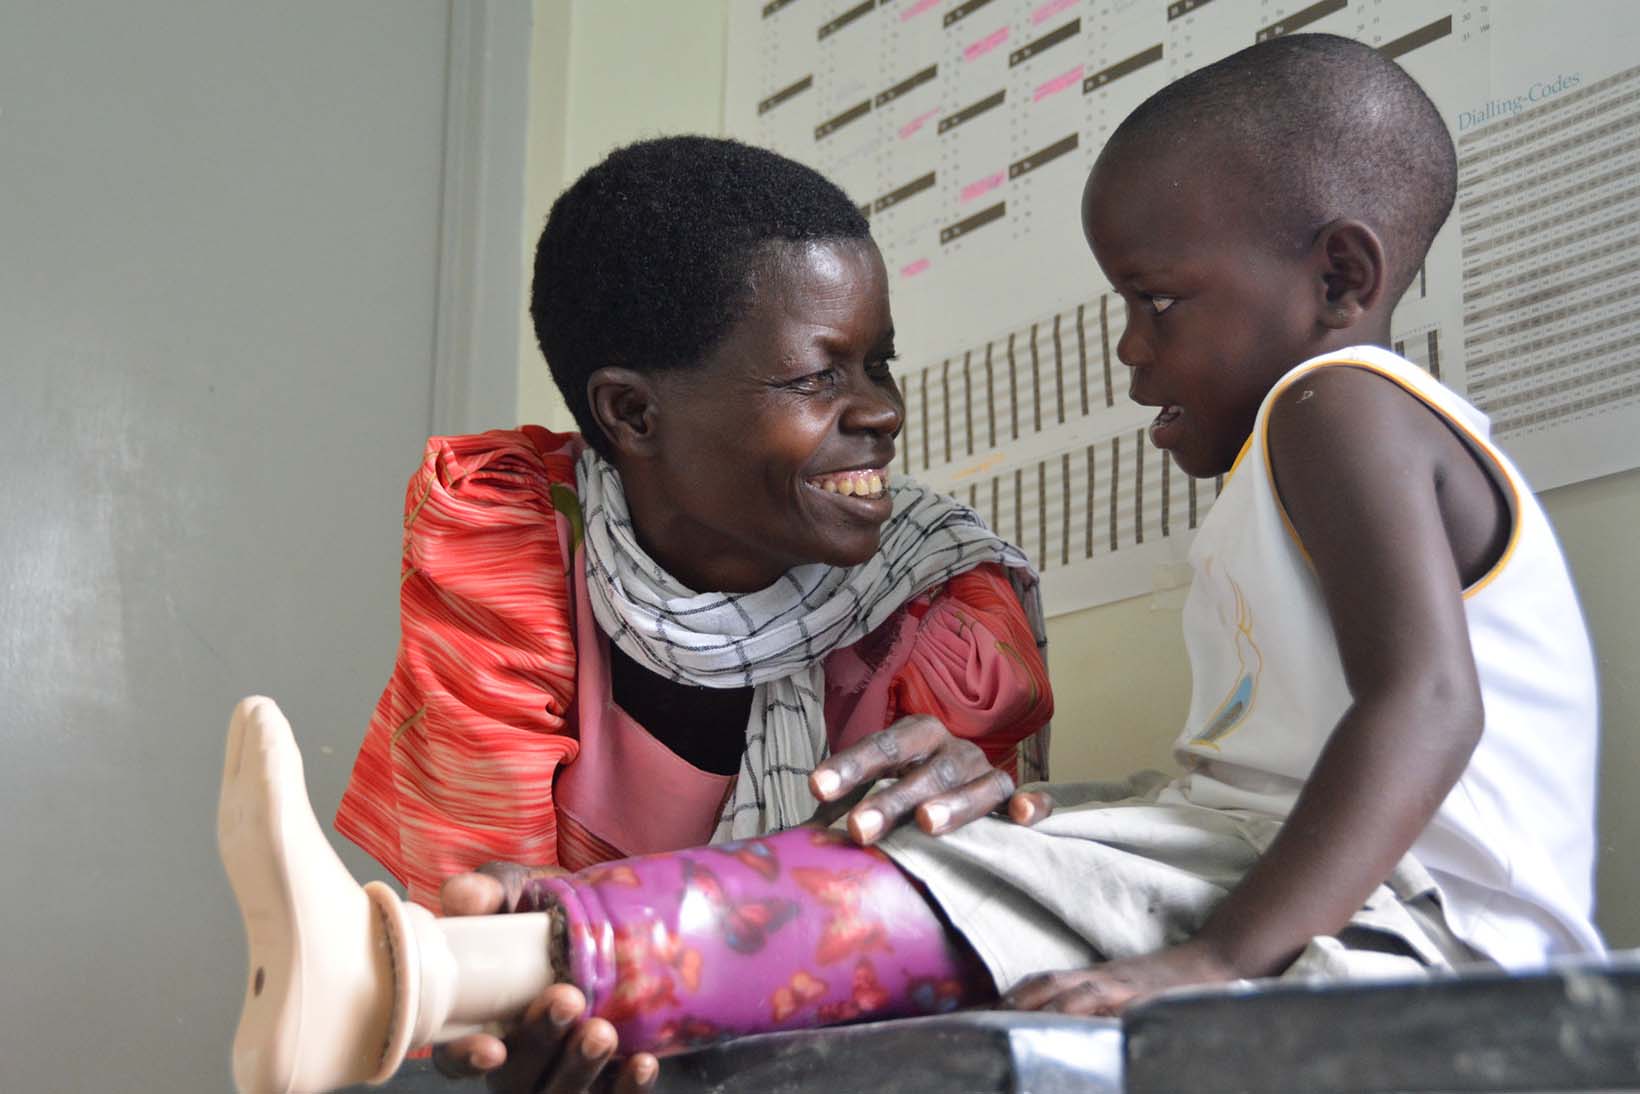 Una bambina dell’Uganda, con una protesi alla gamba, guarda la sua nonna sorridente.